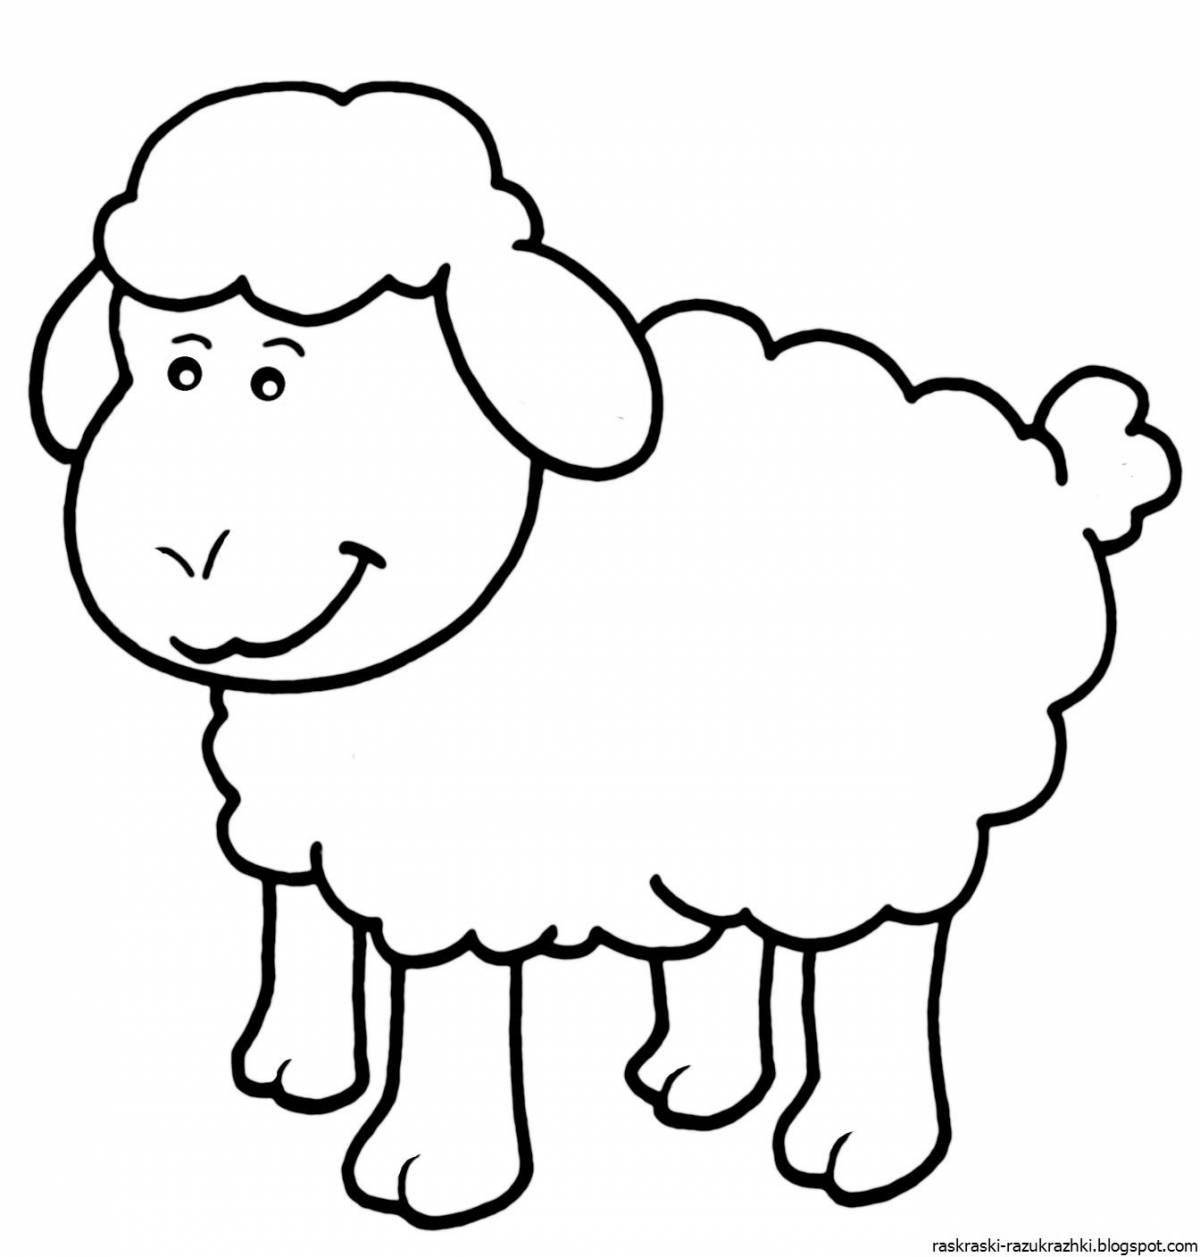 Раскраска милая овечка для детей 2-3 лет